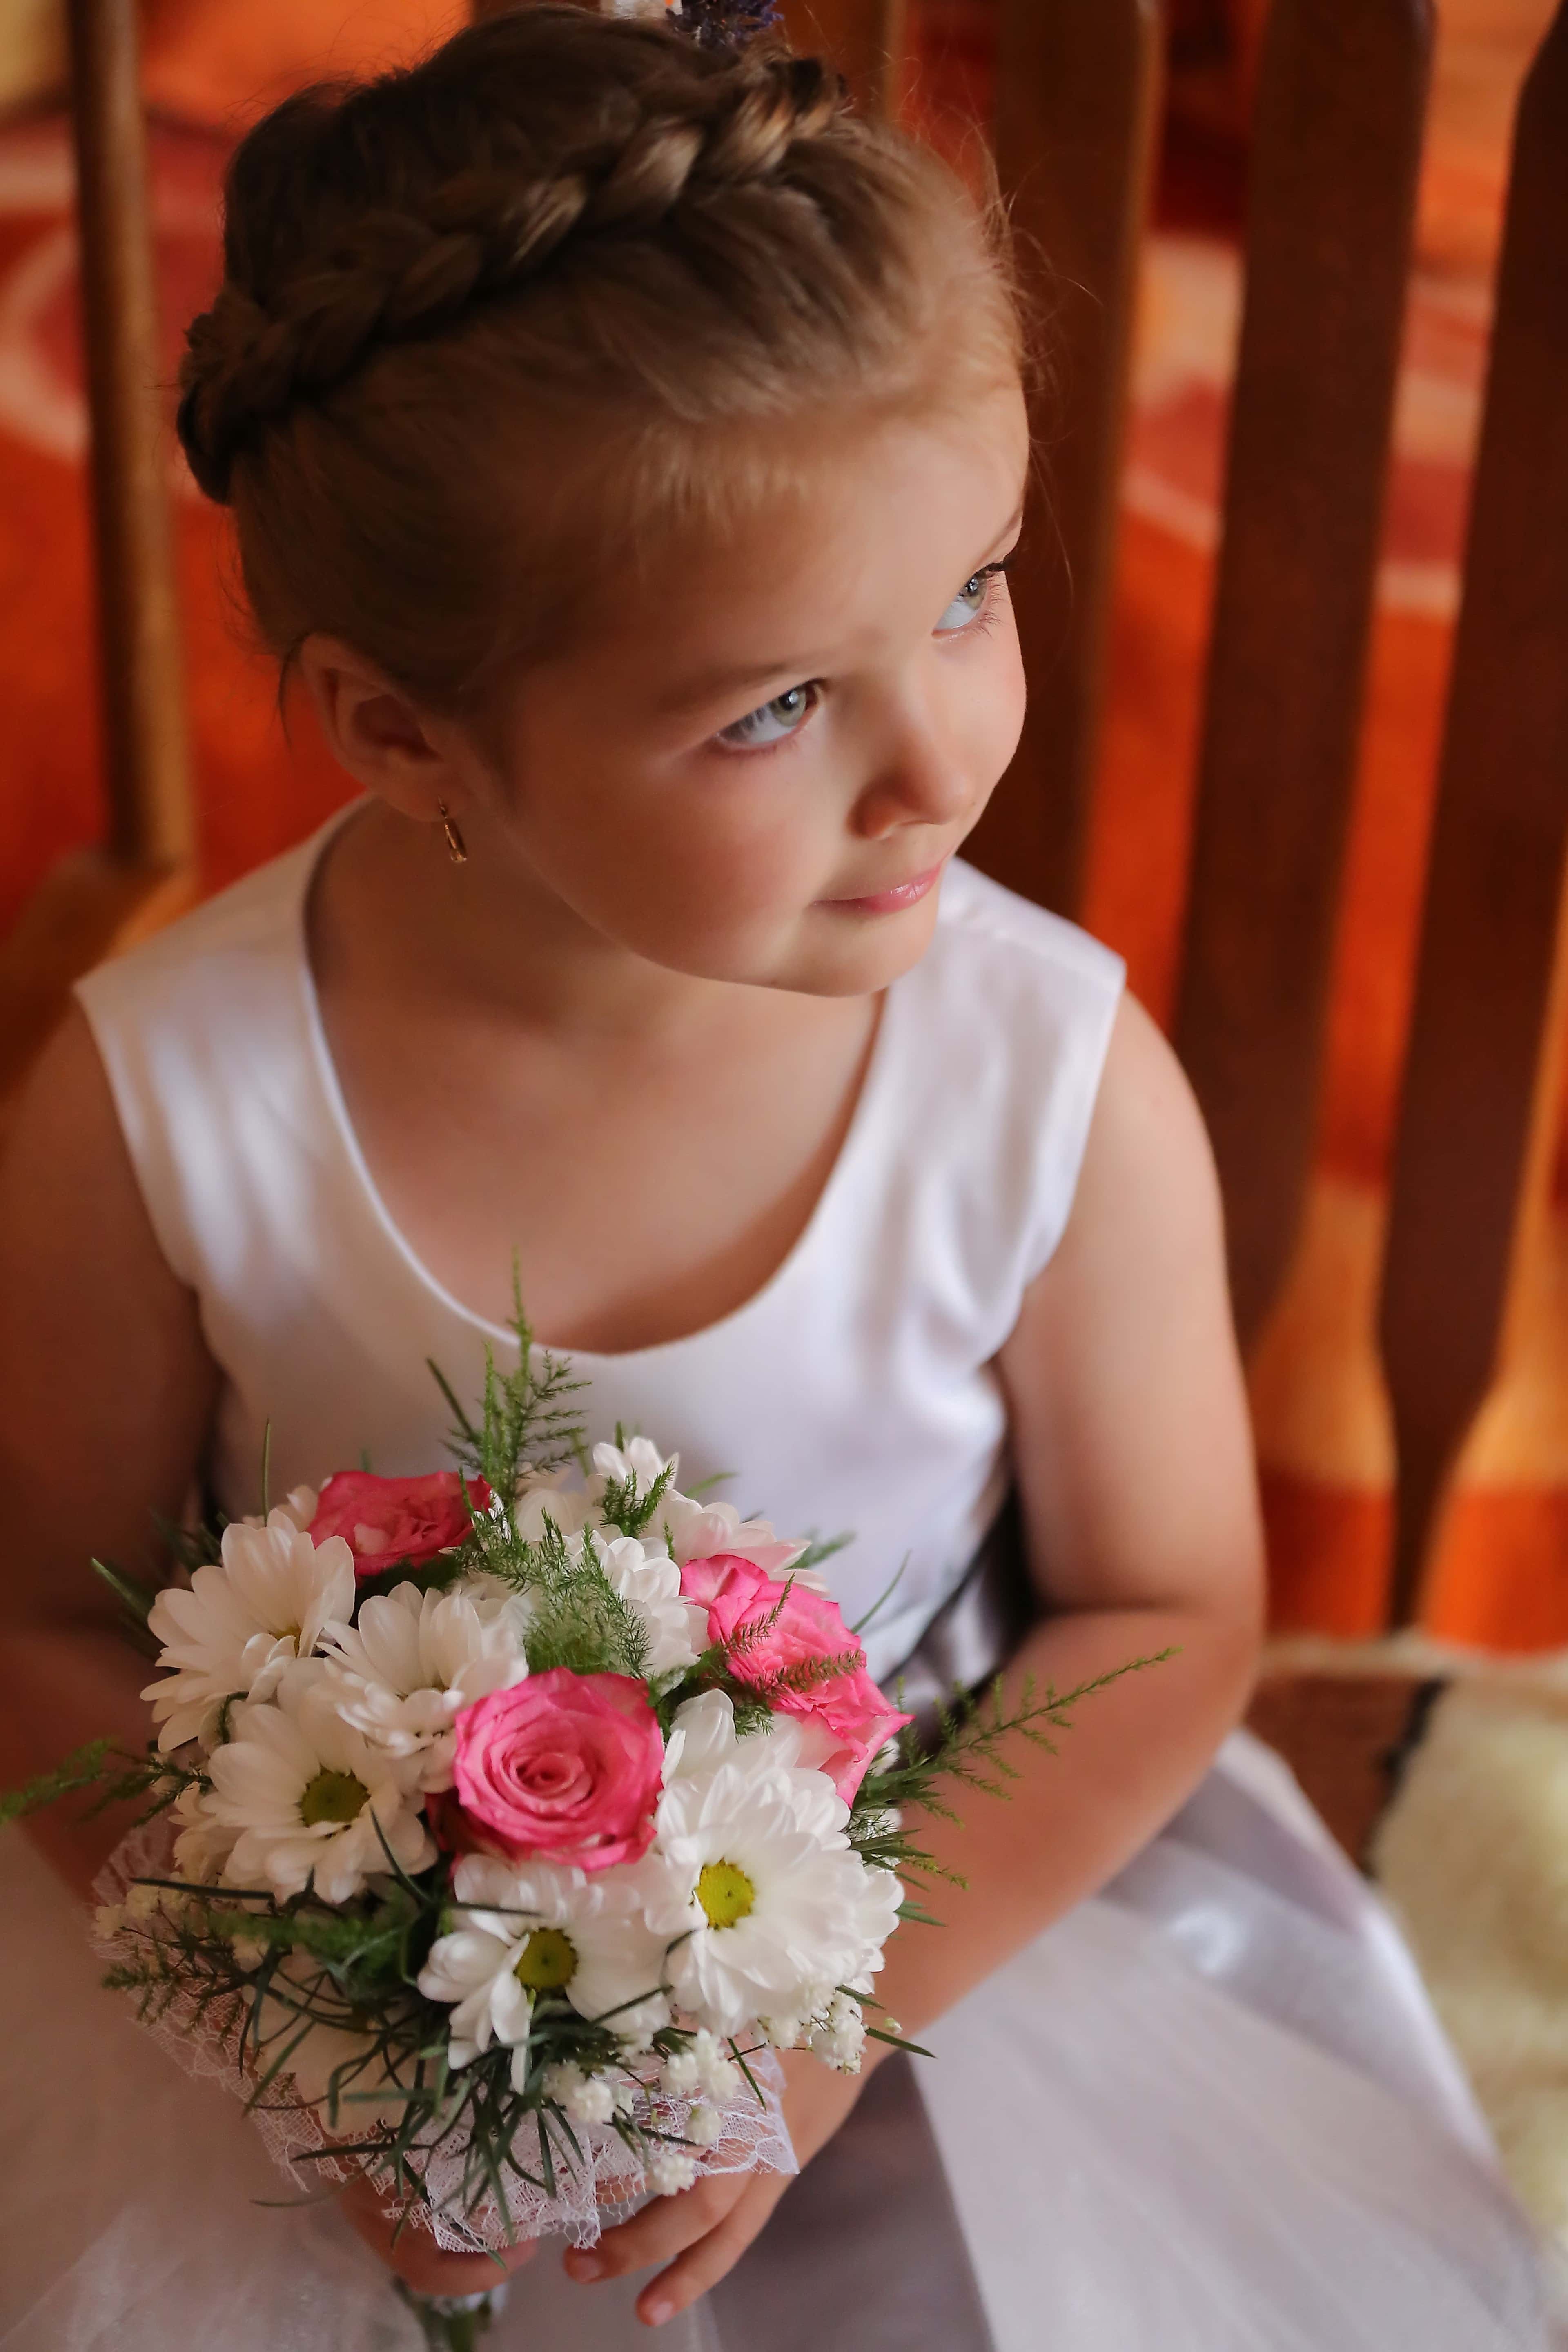 フリー写真画像 子 かわいい女の子 エレガントです 髪型 イヤリング ウェディングブーケ 横から見た図 花束 結婚式 花